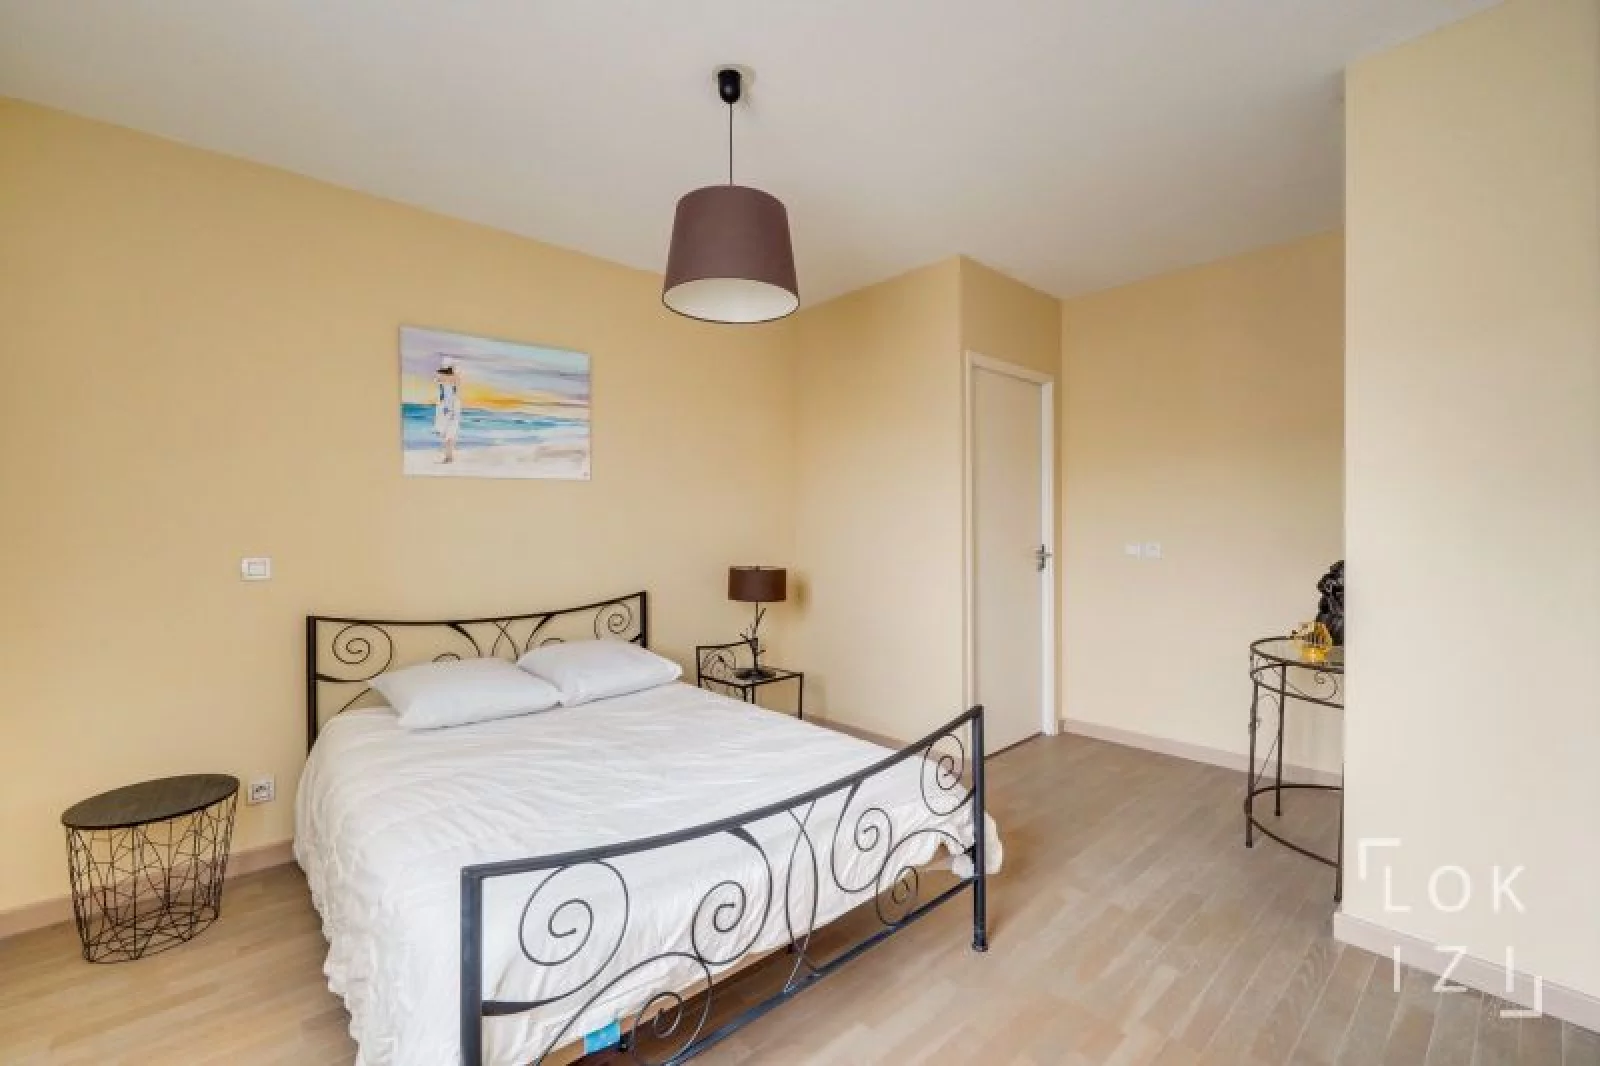 Location appartement meublé 2 pièces 41 m² (Bordeaux - Talence)